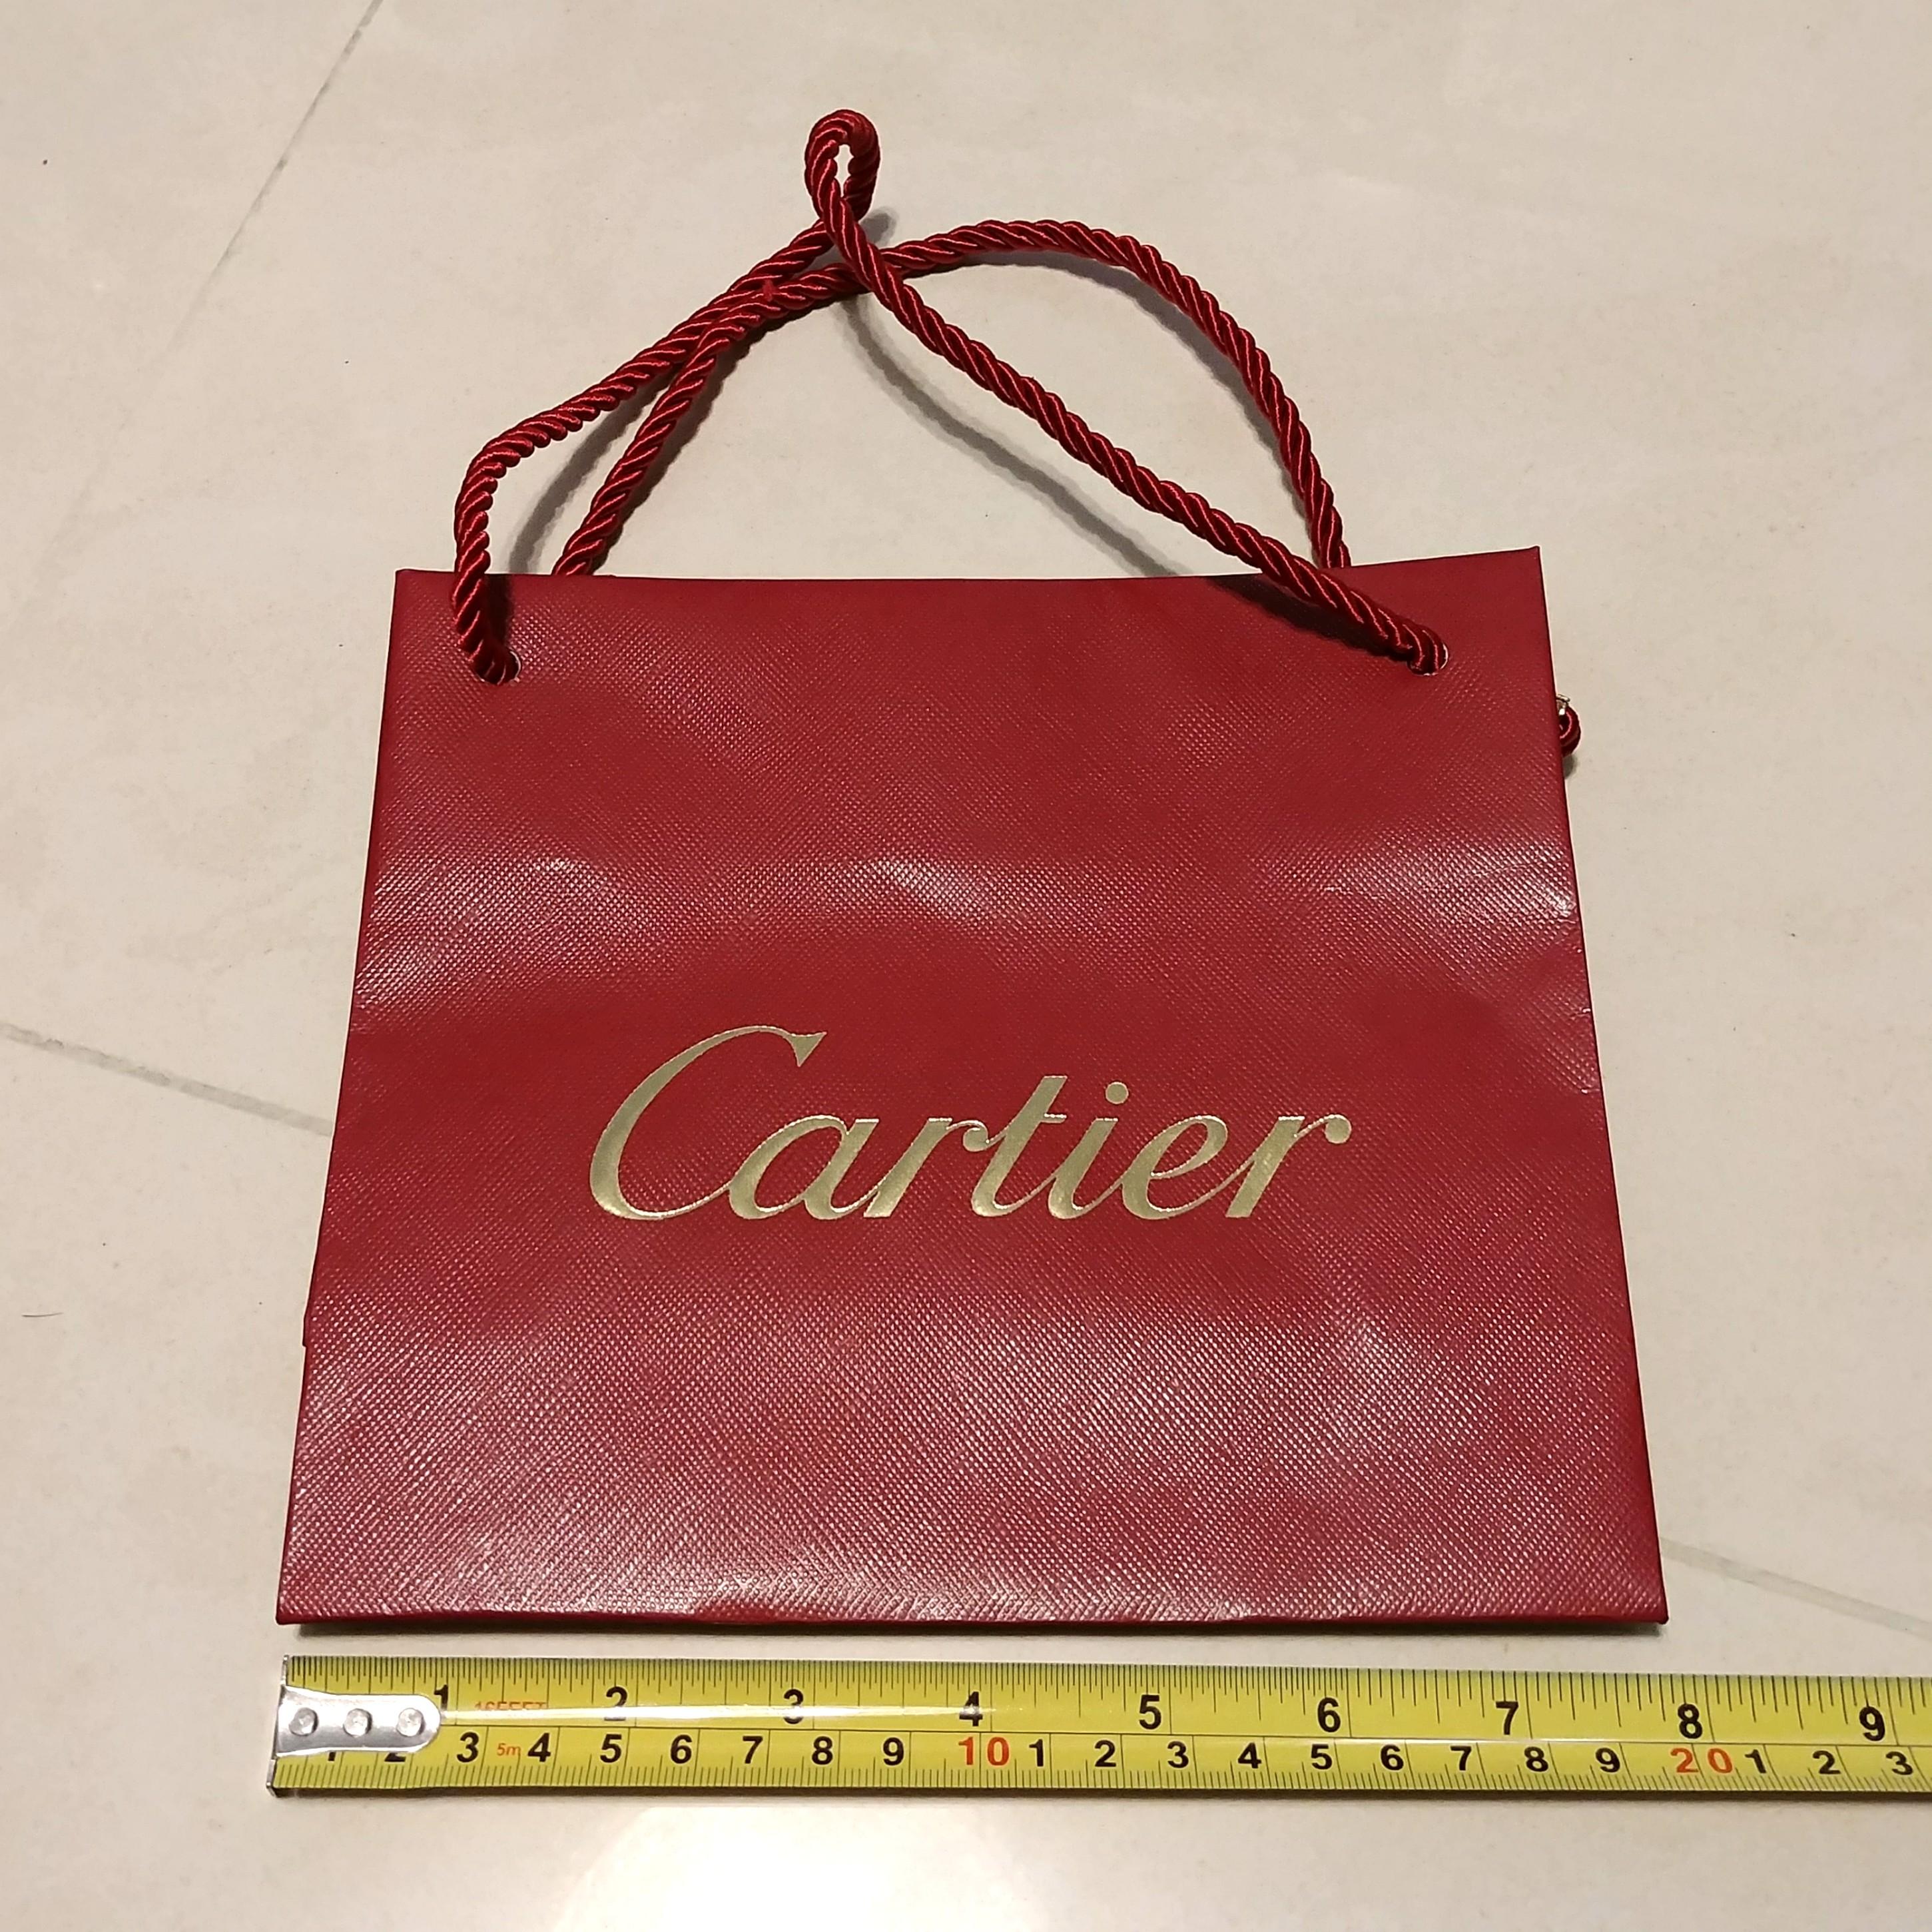 Cartier 紙袋 - ショップ袋